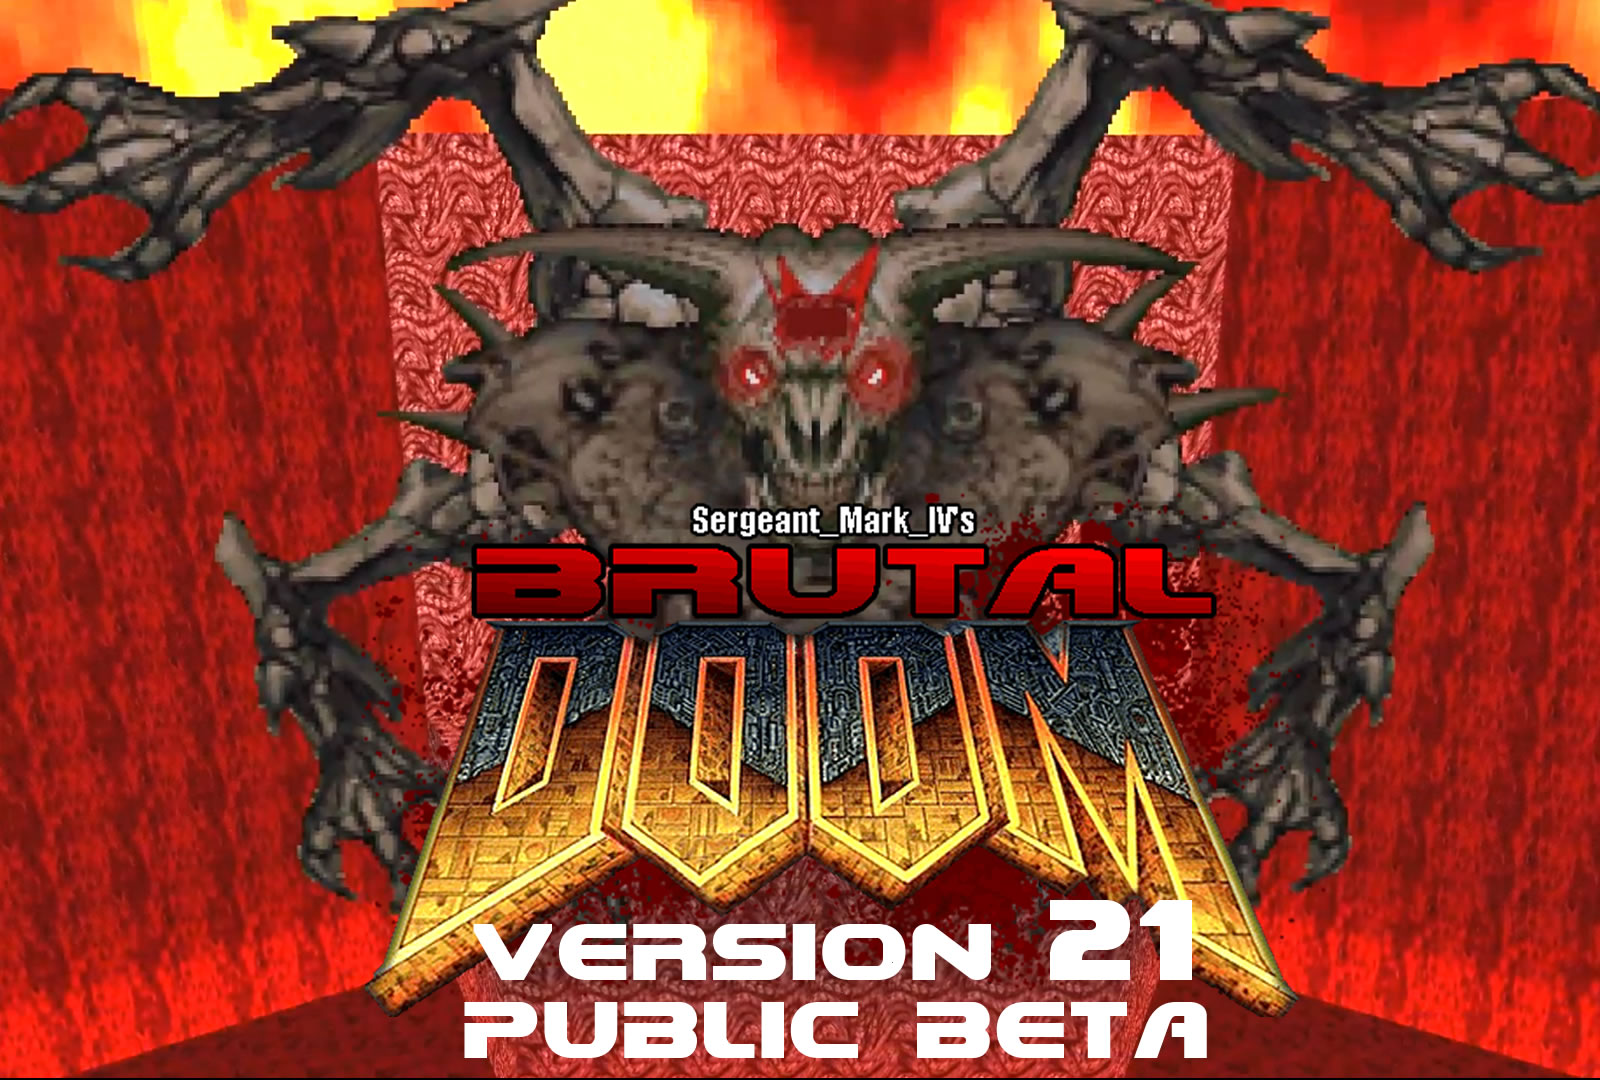 Original Doom pour Android - Télécharge l'APK à partir d'Uptodown